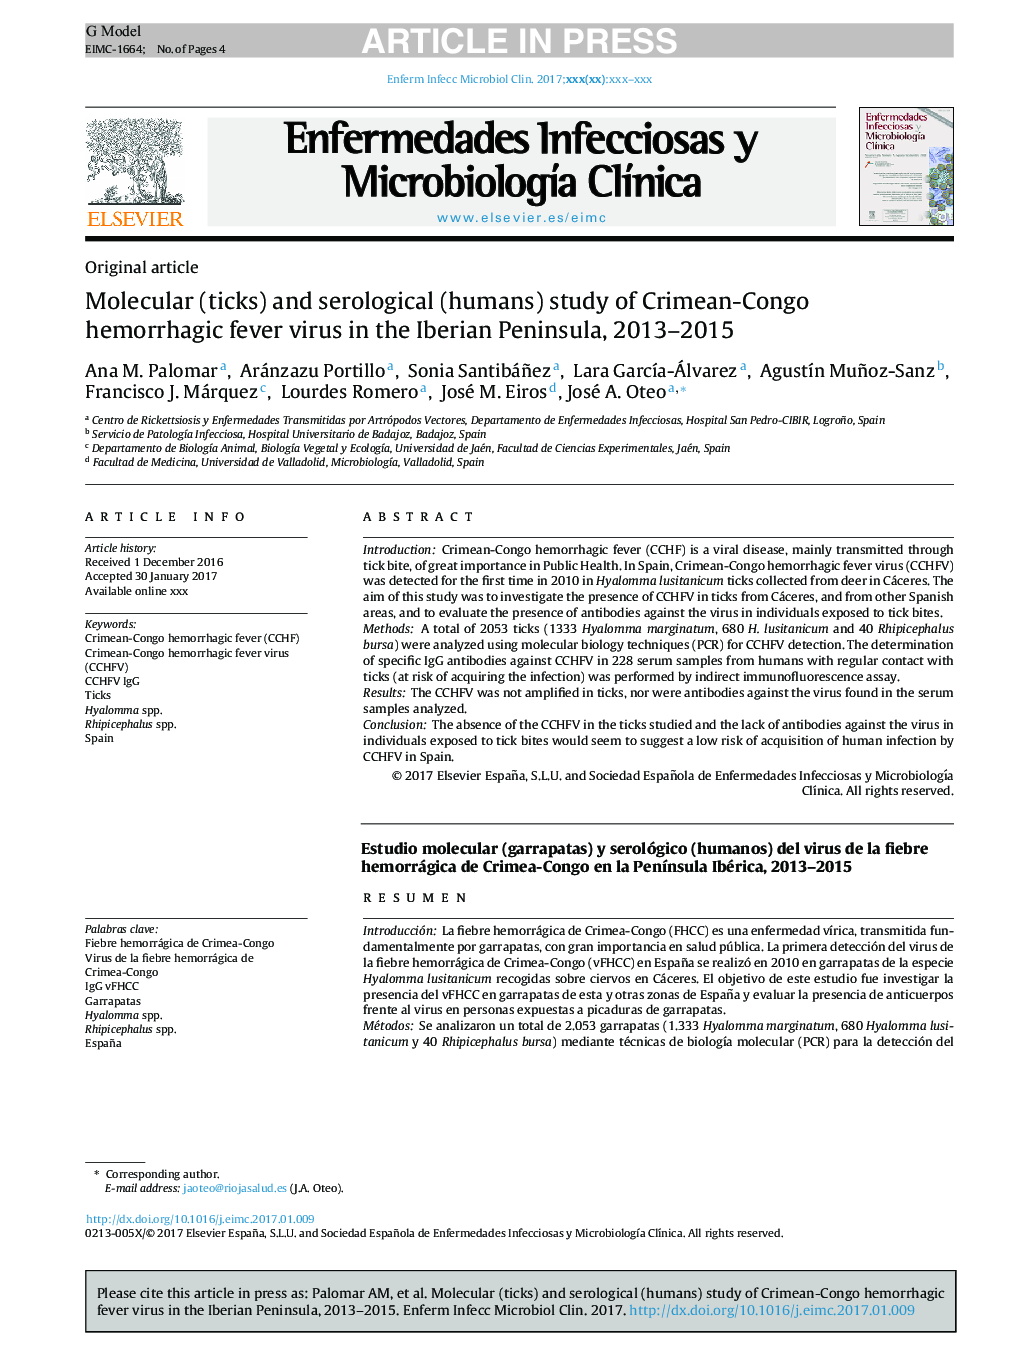 مطالعه مولکولی (کنه) و سرولوژیک (انسان) از ویروس تب خونریزی کریمه-کنگو در شبه جزیره ایبرین، 2013-2015 